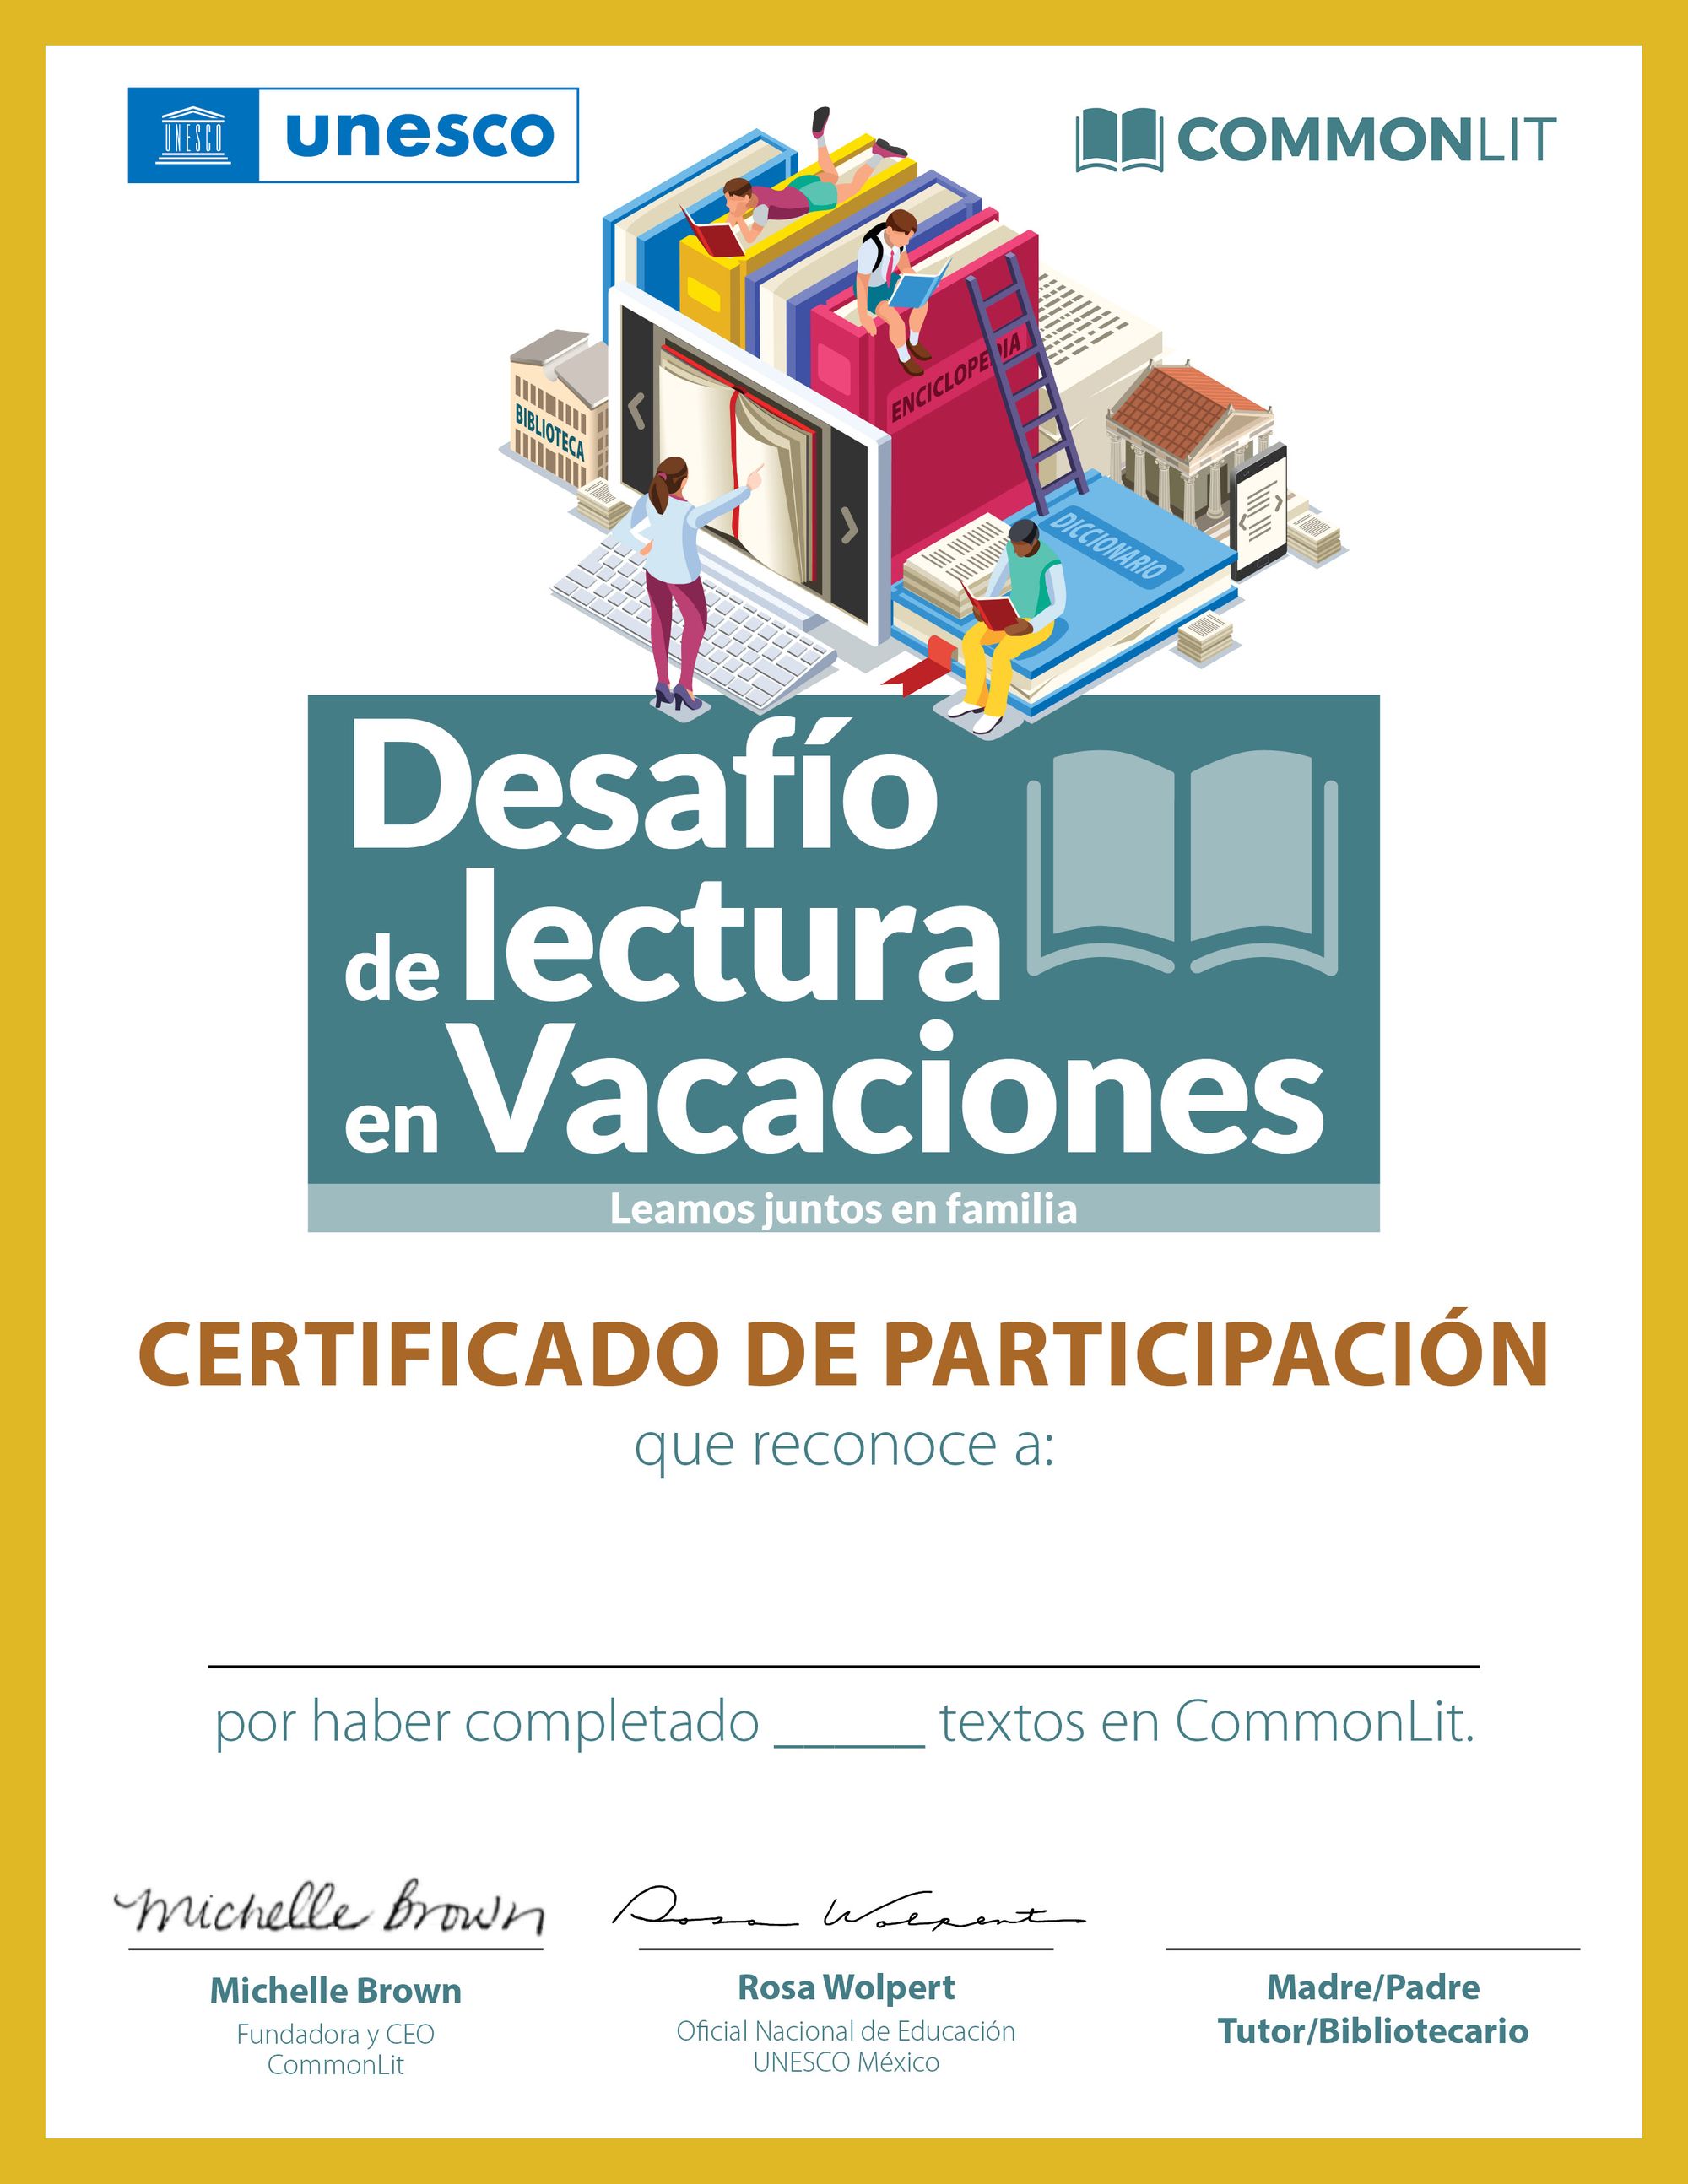 Imagen del certificado que otorgan CommonLit y UNESCO por participar en el Desafío de Lectura en Vacaciones. 